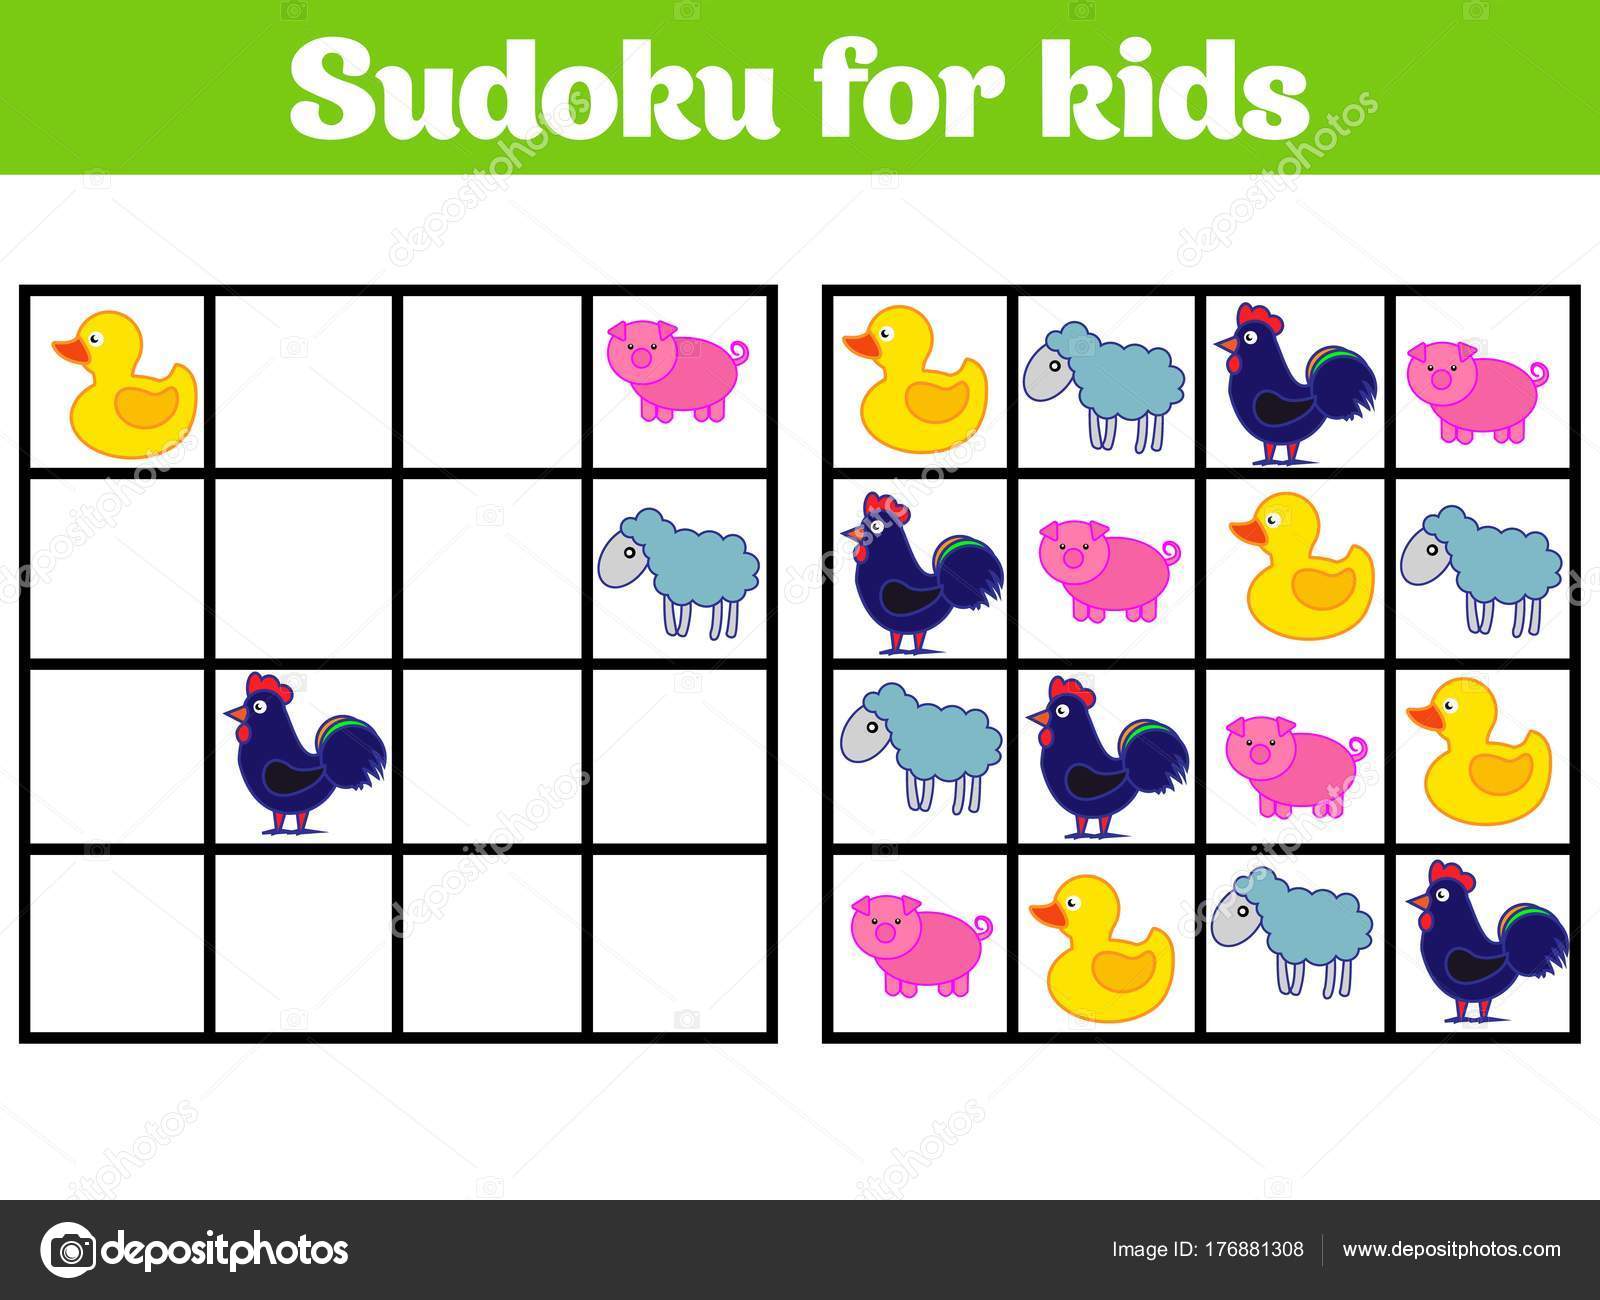 Sudoku. mosaico matemático de crianças e adultos. quadrado mágico. jogo de  lógica. rebus digital. planilha de entretenimento pré-escolar do jogo de  sudoku de crianças educacionais de ilustração vetorial. quebra-cabeça para  impressão.